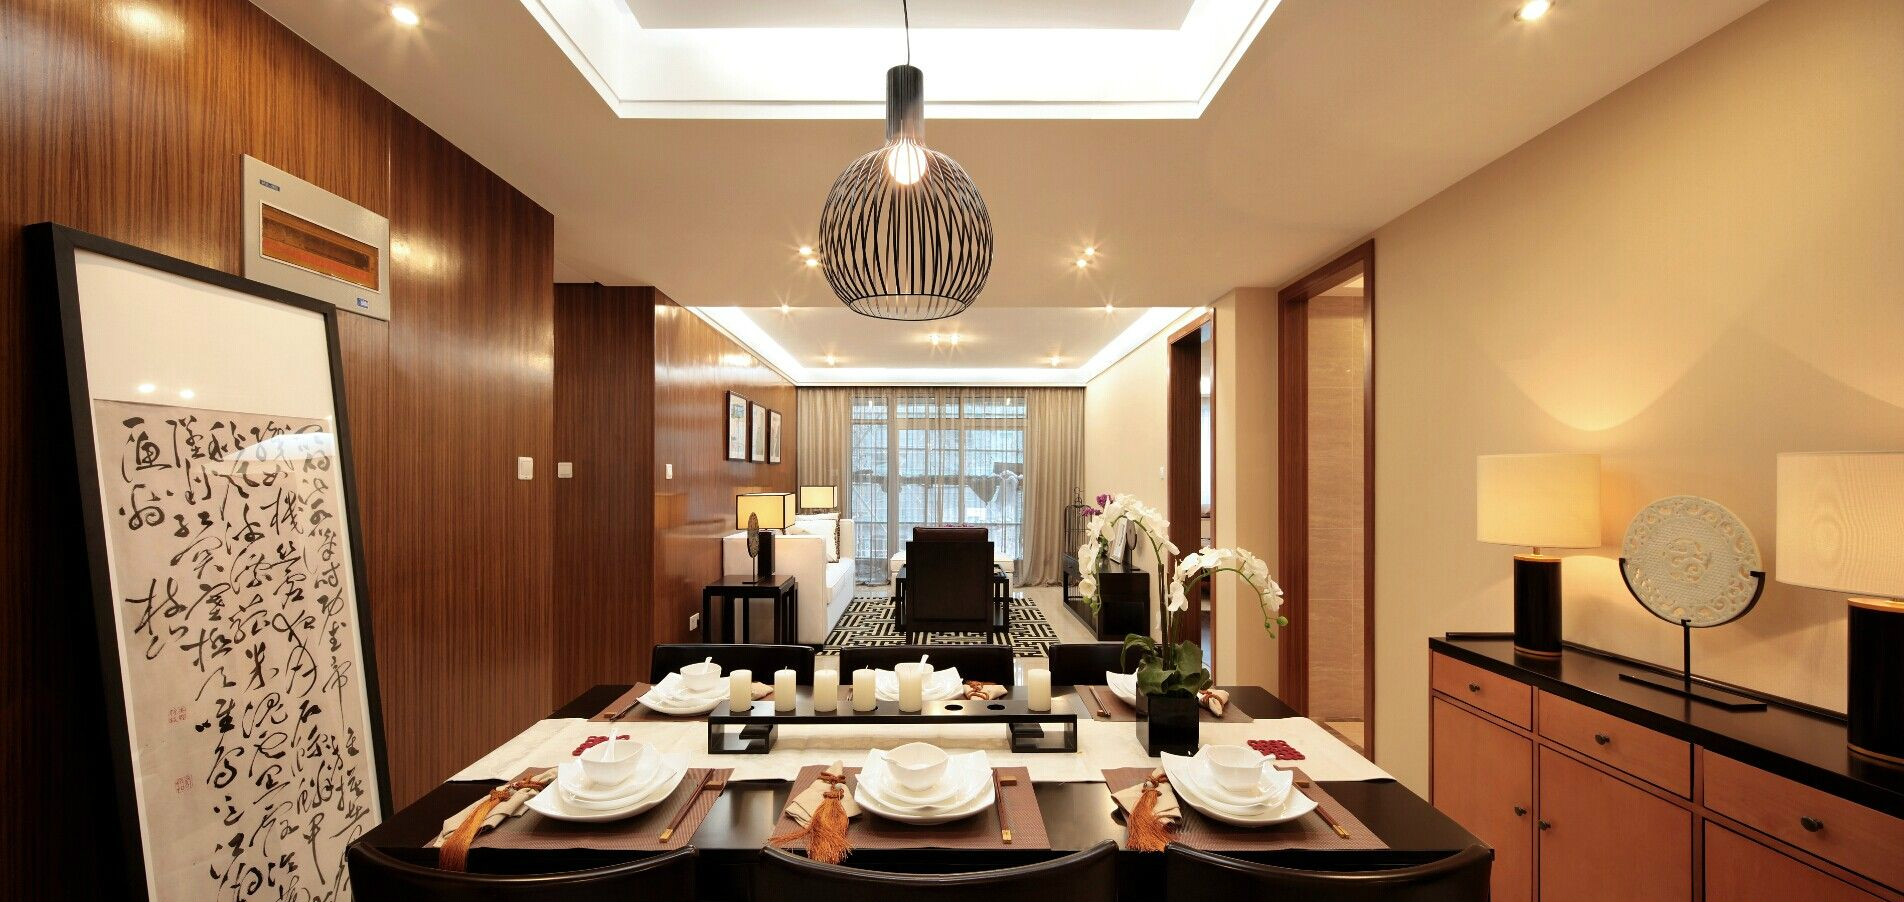 简约 现代 餐厅图片来自成都居然之家高端设计中心在中铁丽景书香的分享